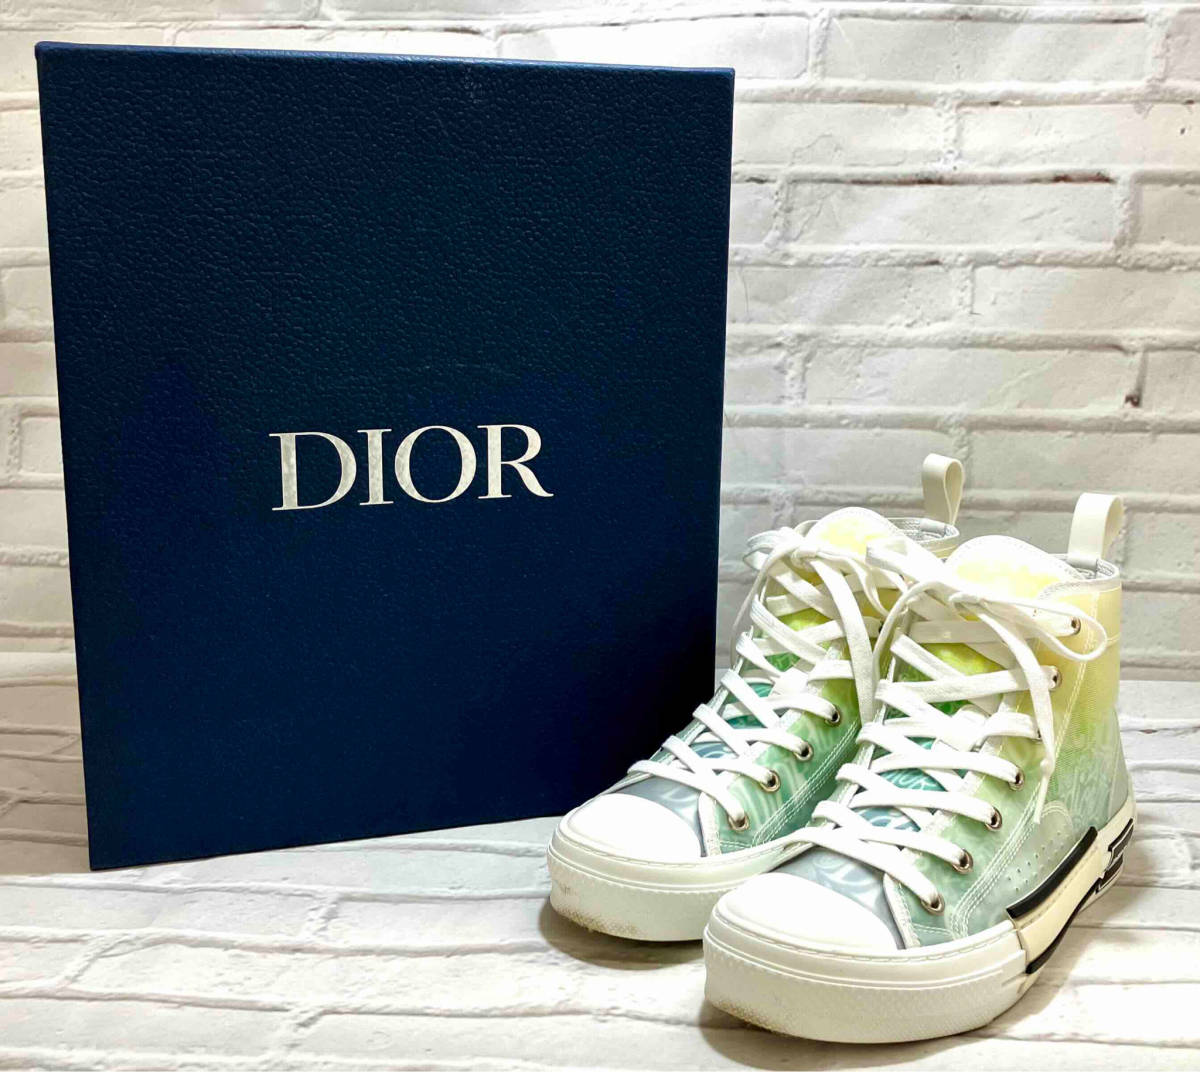 DIOR / Dior / спортивные туфли / 3SH118YYL / с коробкой / размер 38